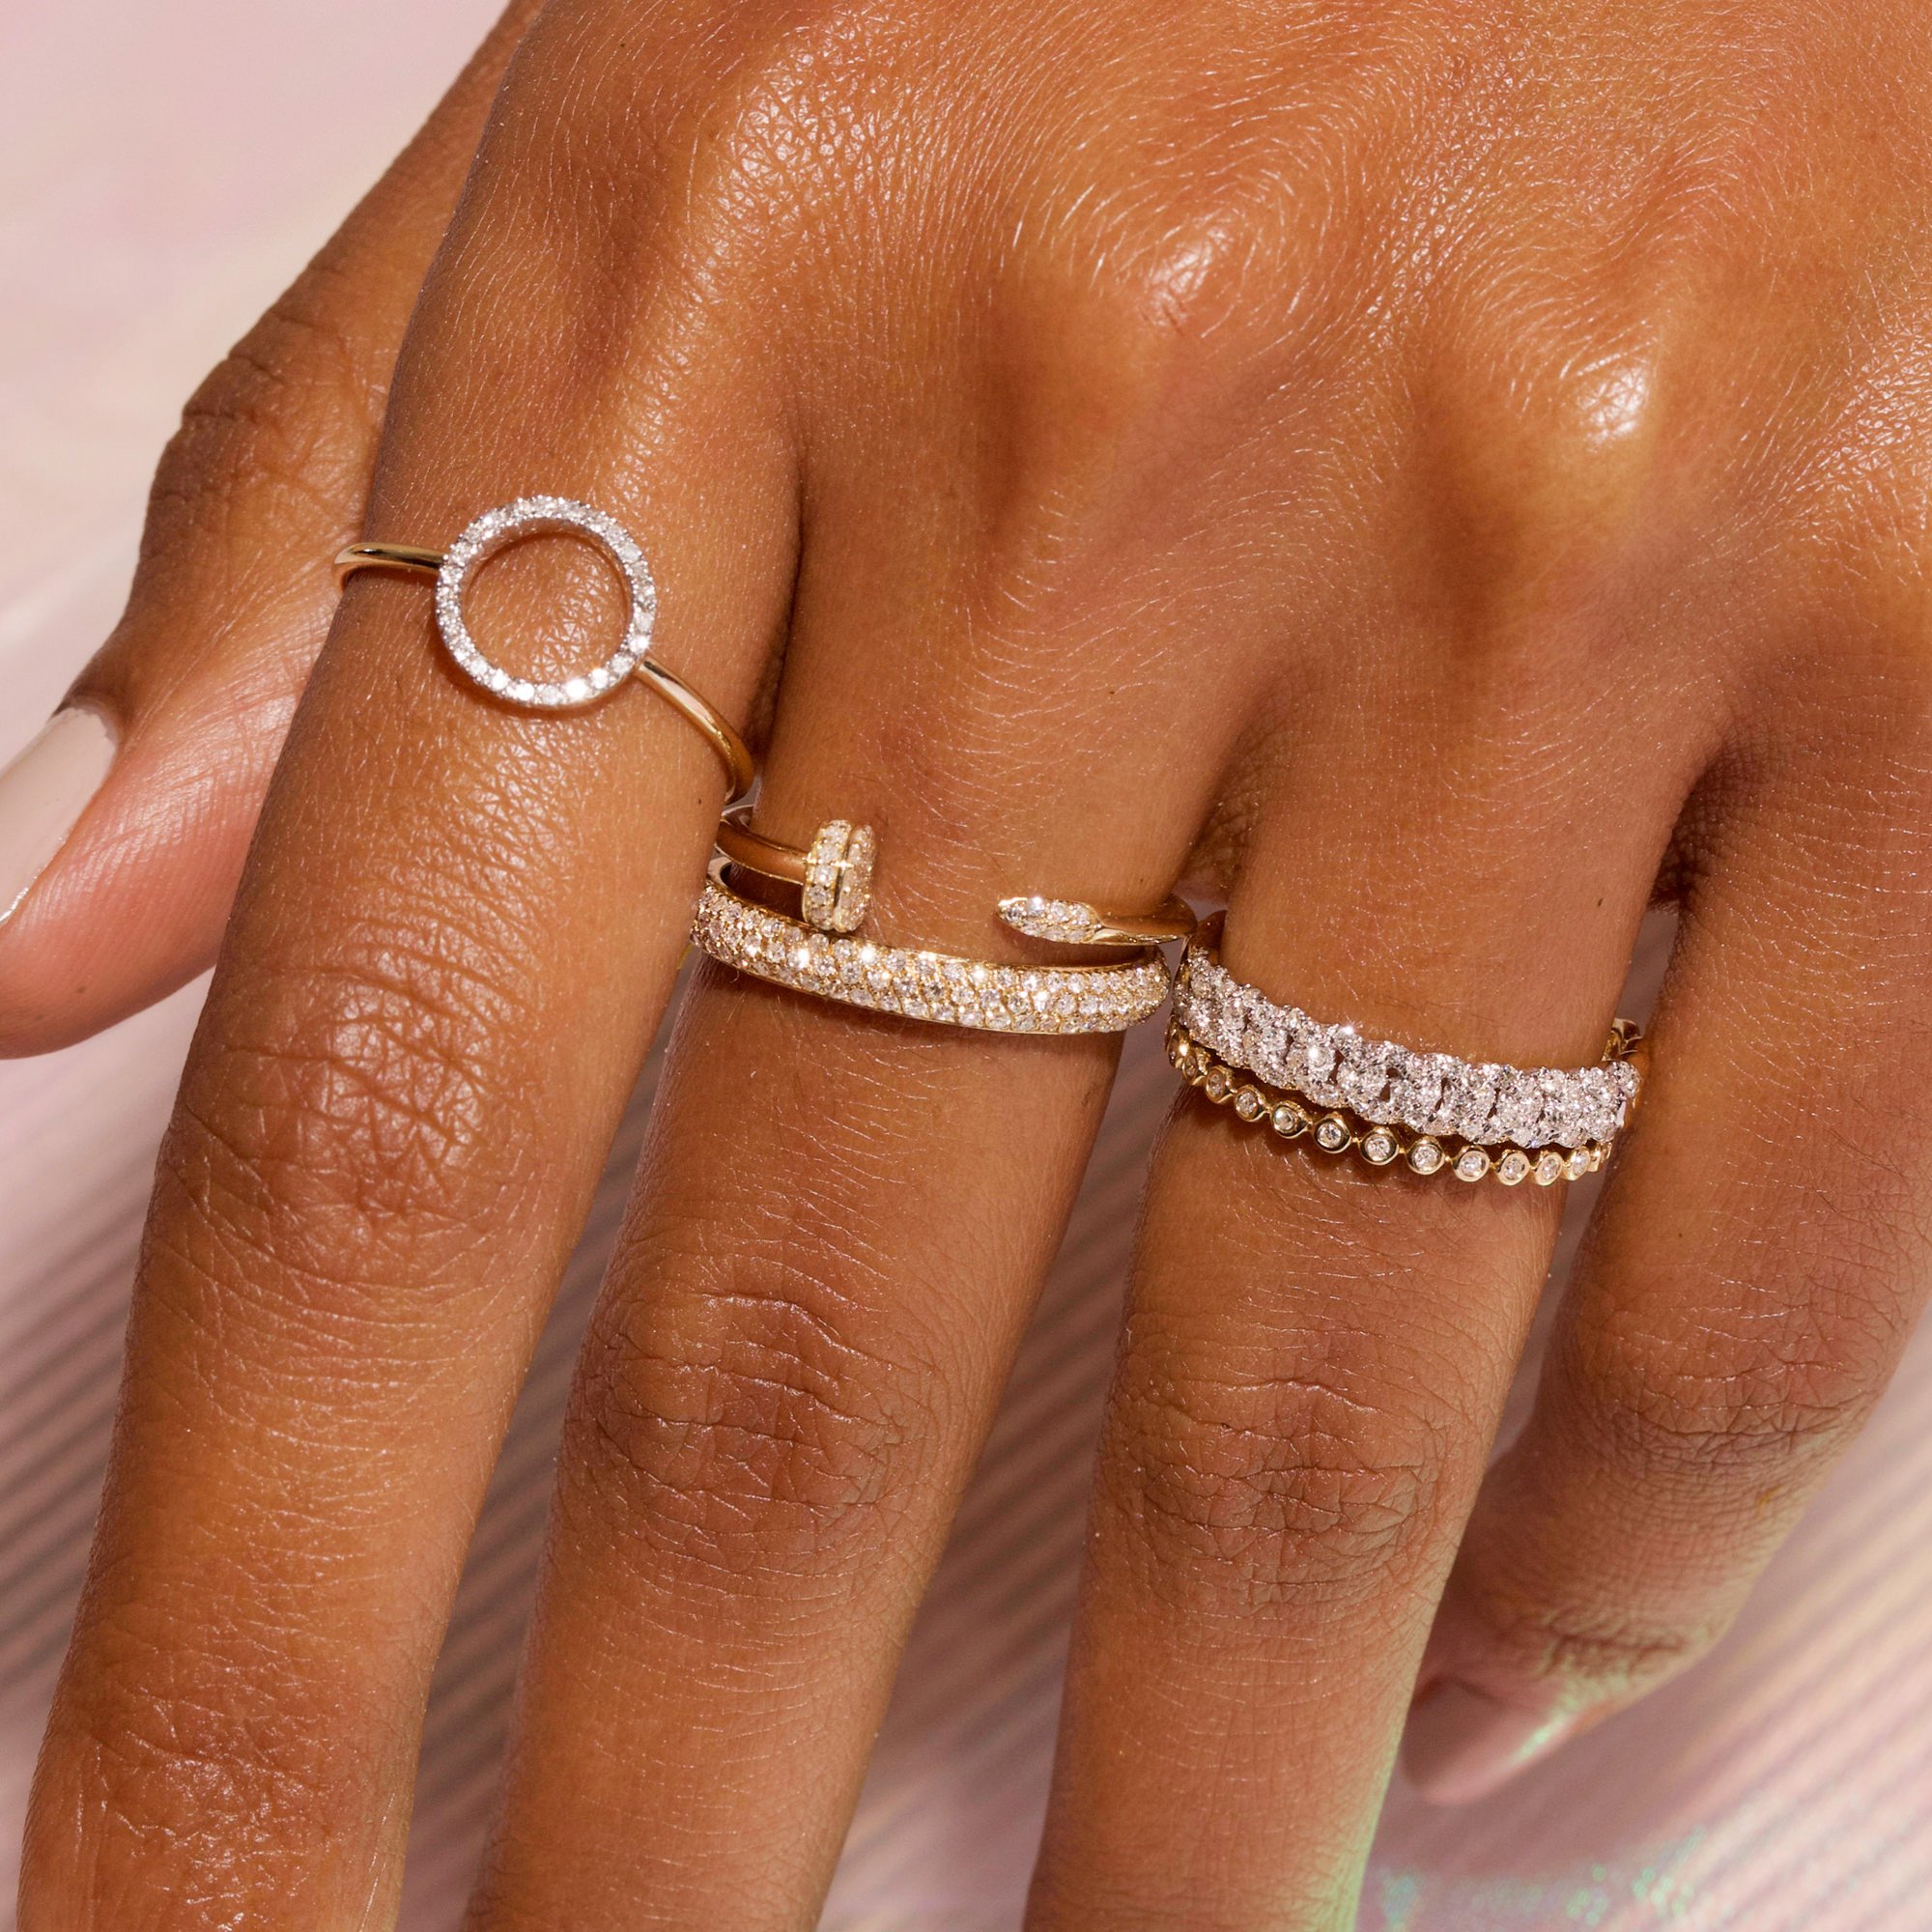 Diamanti, anello personalizzato, dove farlo?